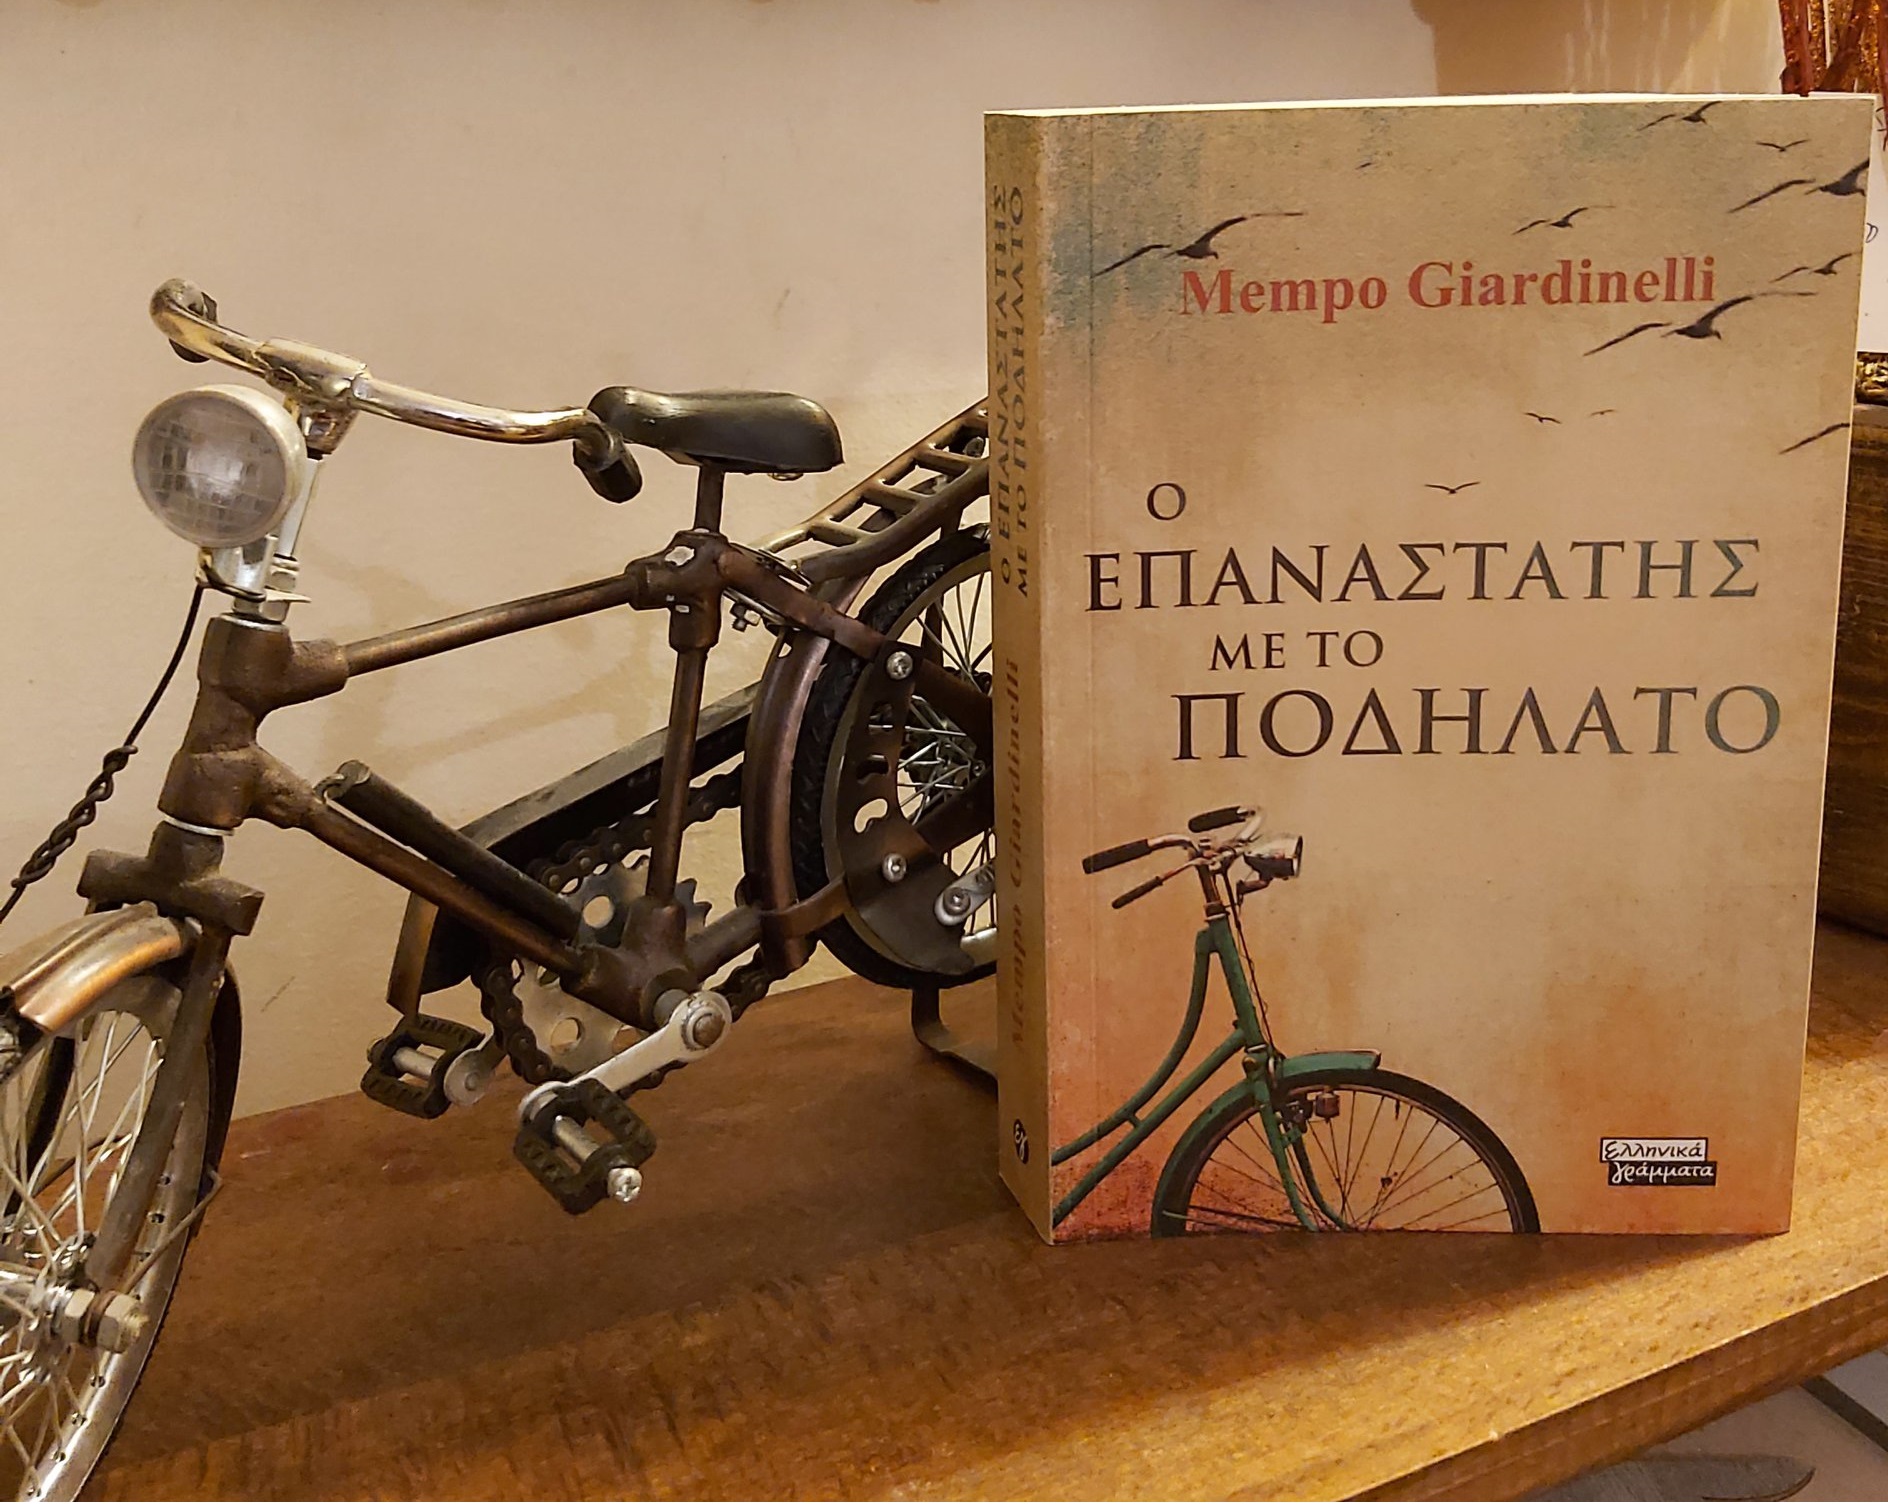 Ο "Επαναστάτης με το ποδήλατο". Η ιστορία του στρατιωτικού που πολέμησε  εναντίον της χούντας στην Παραγουάη, όταν το 80% του στρατού λιποτάκτησε.  Το εμβληματικό μυθιστόρημα κυκλοφορεί στα ελληνικά - ΜΗΧΑΝΗ ΤΟΥ ΧΡΟΝΟΥ